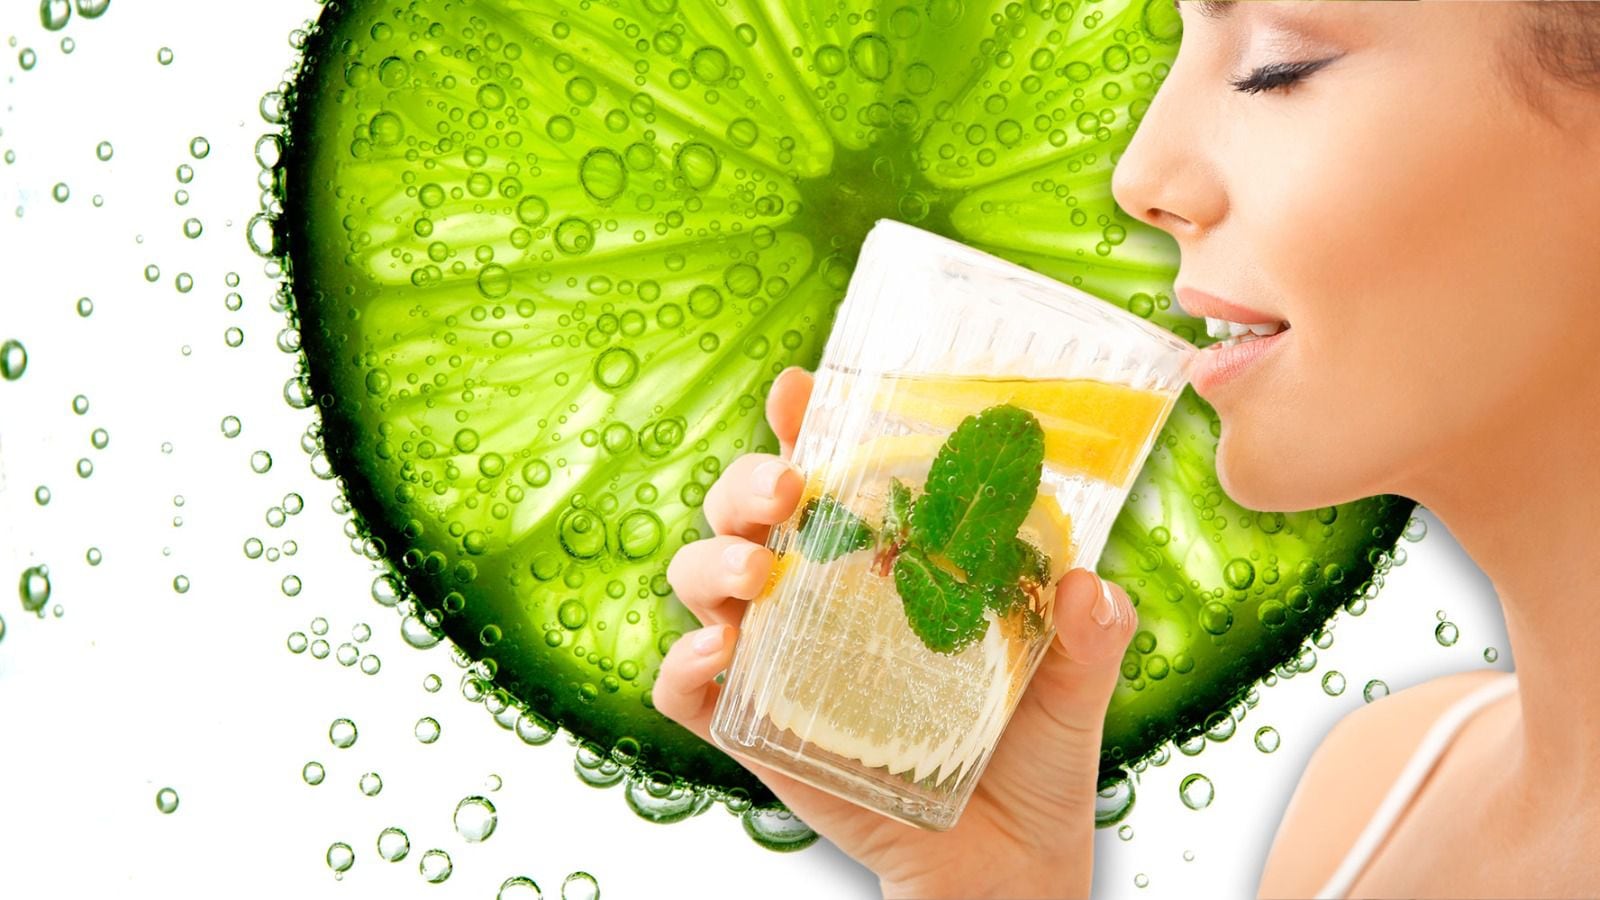 El agua mineral con limón es un remedio casero que podría promover la ingesta de líquidos saludables. (Foto: Especial / El Financiero).